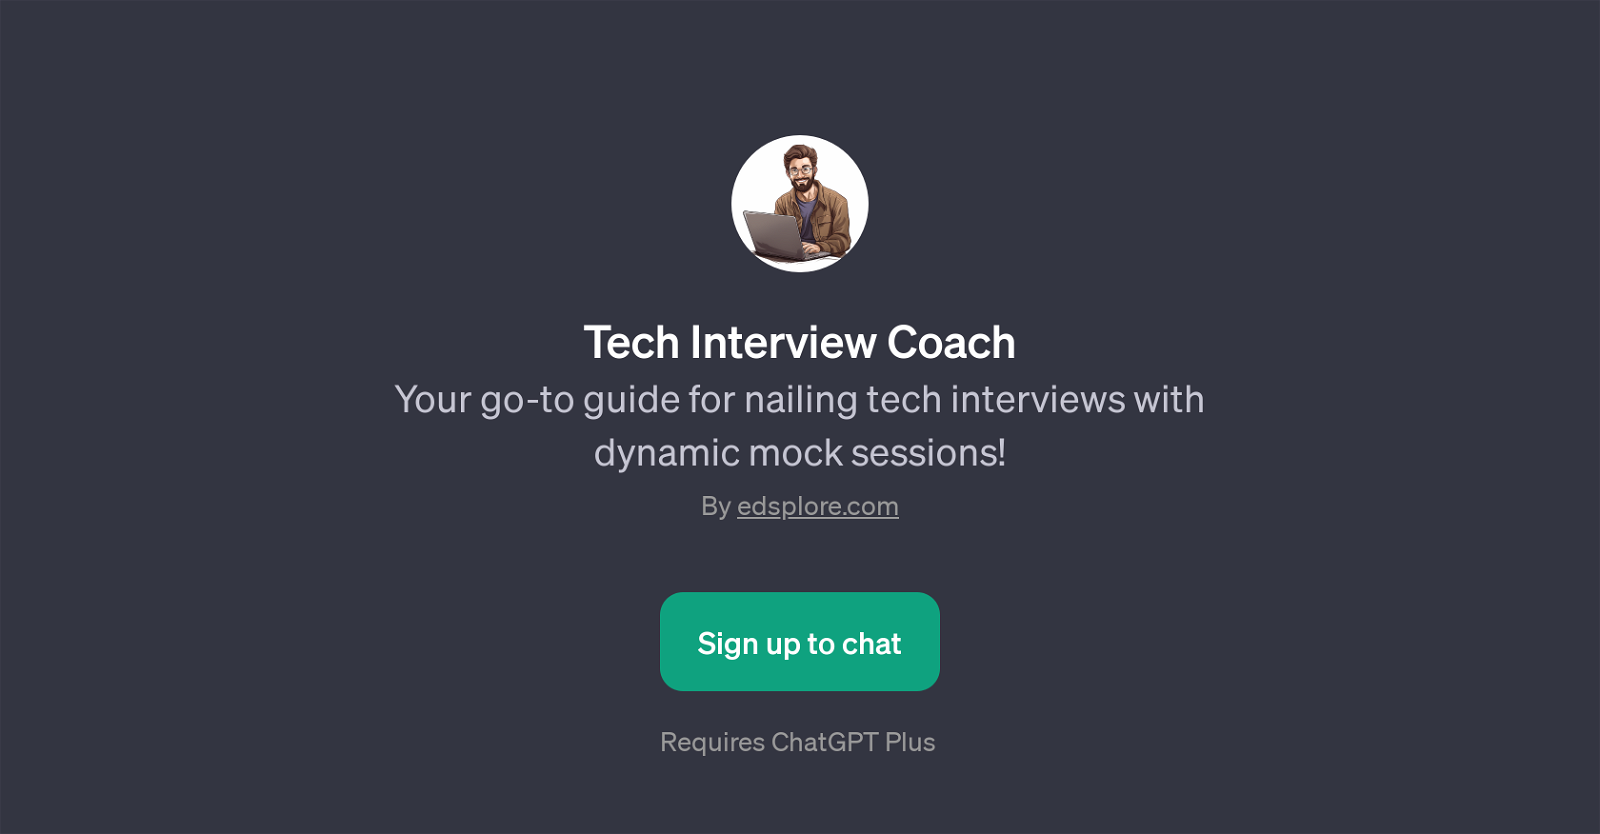 Tech Interview Coach website